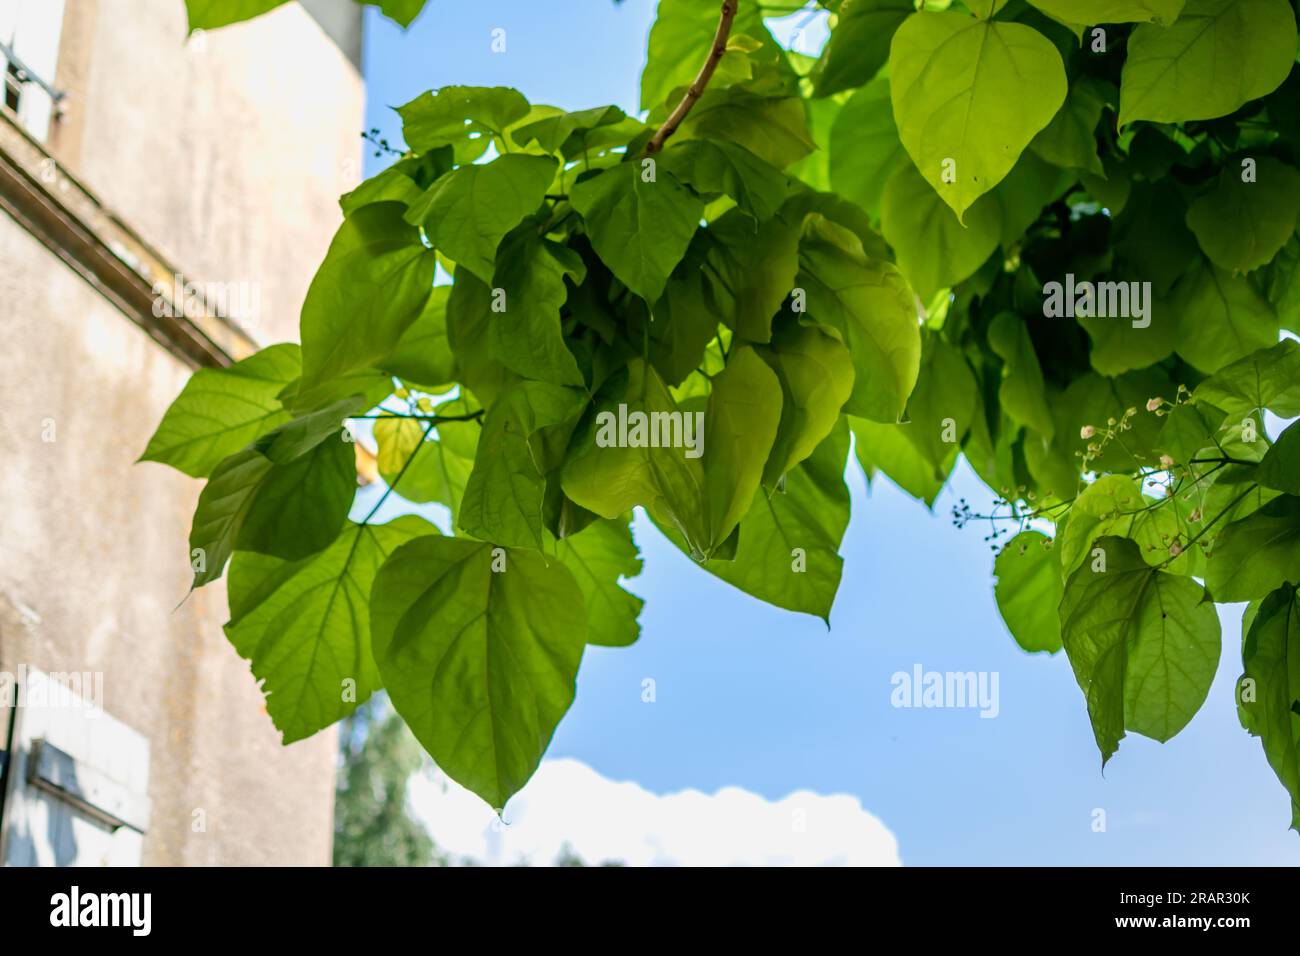 Catalpa tree with leaves, catalpa bignonioides, catalpa speciosa or cigar tree Stock Photo